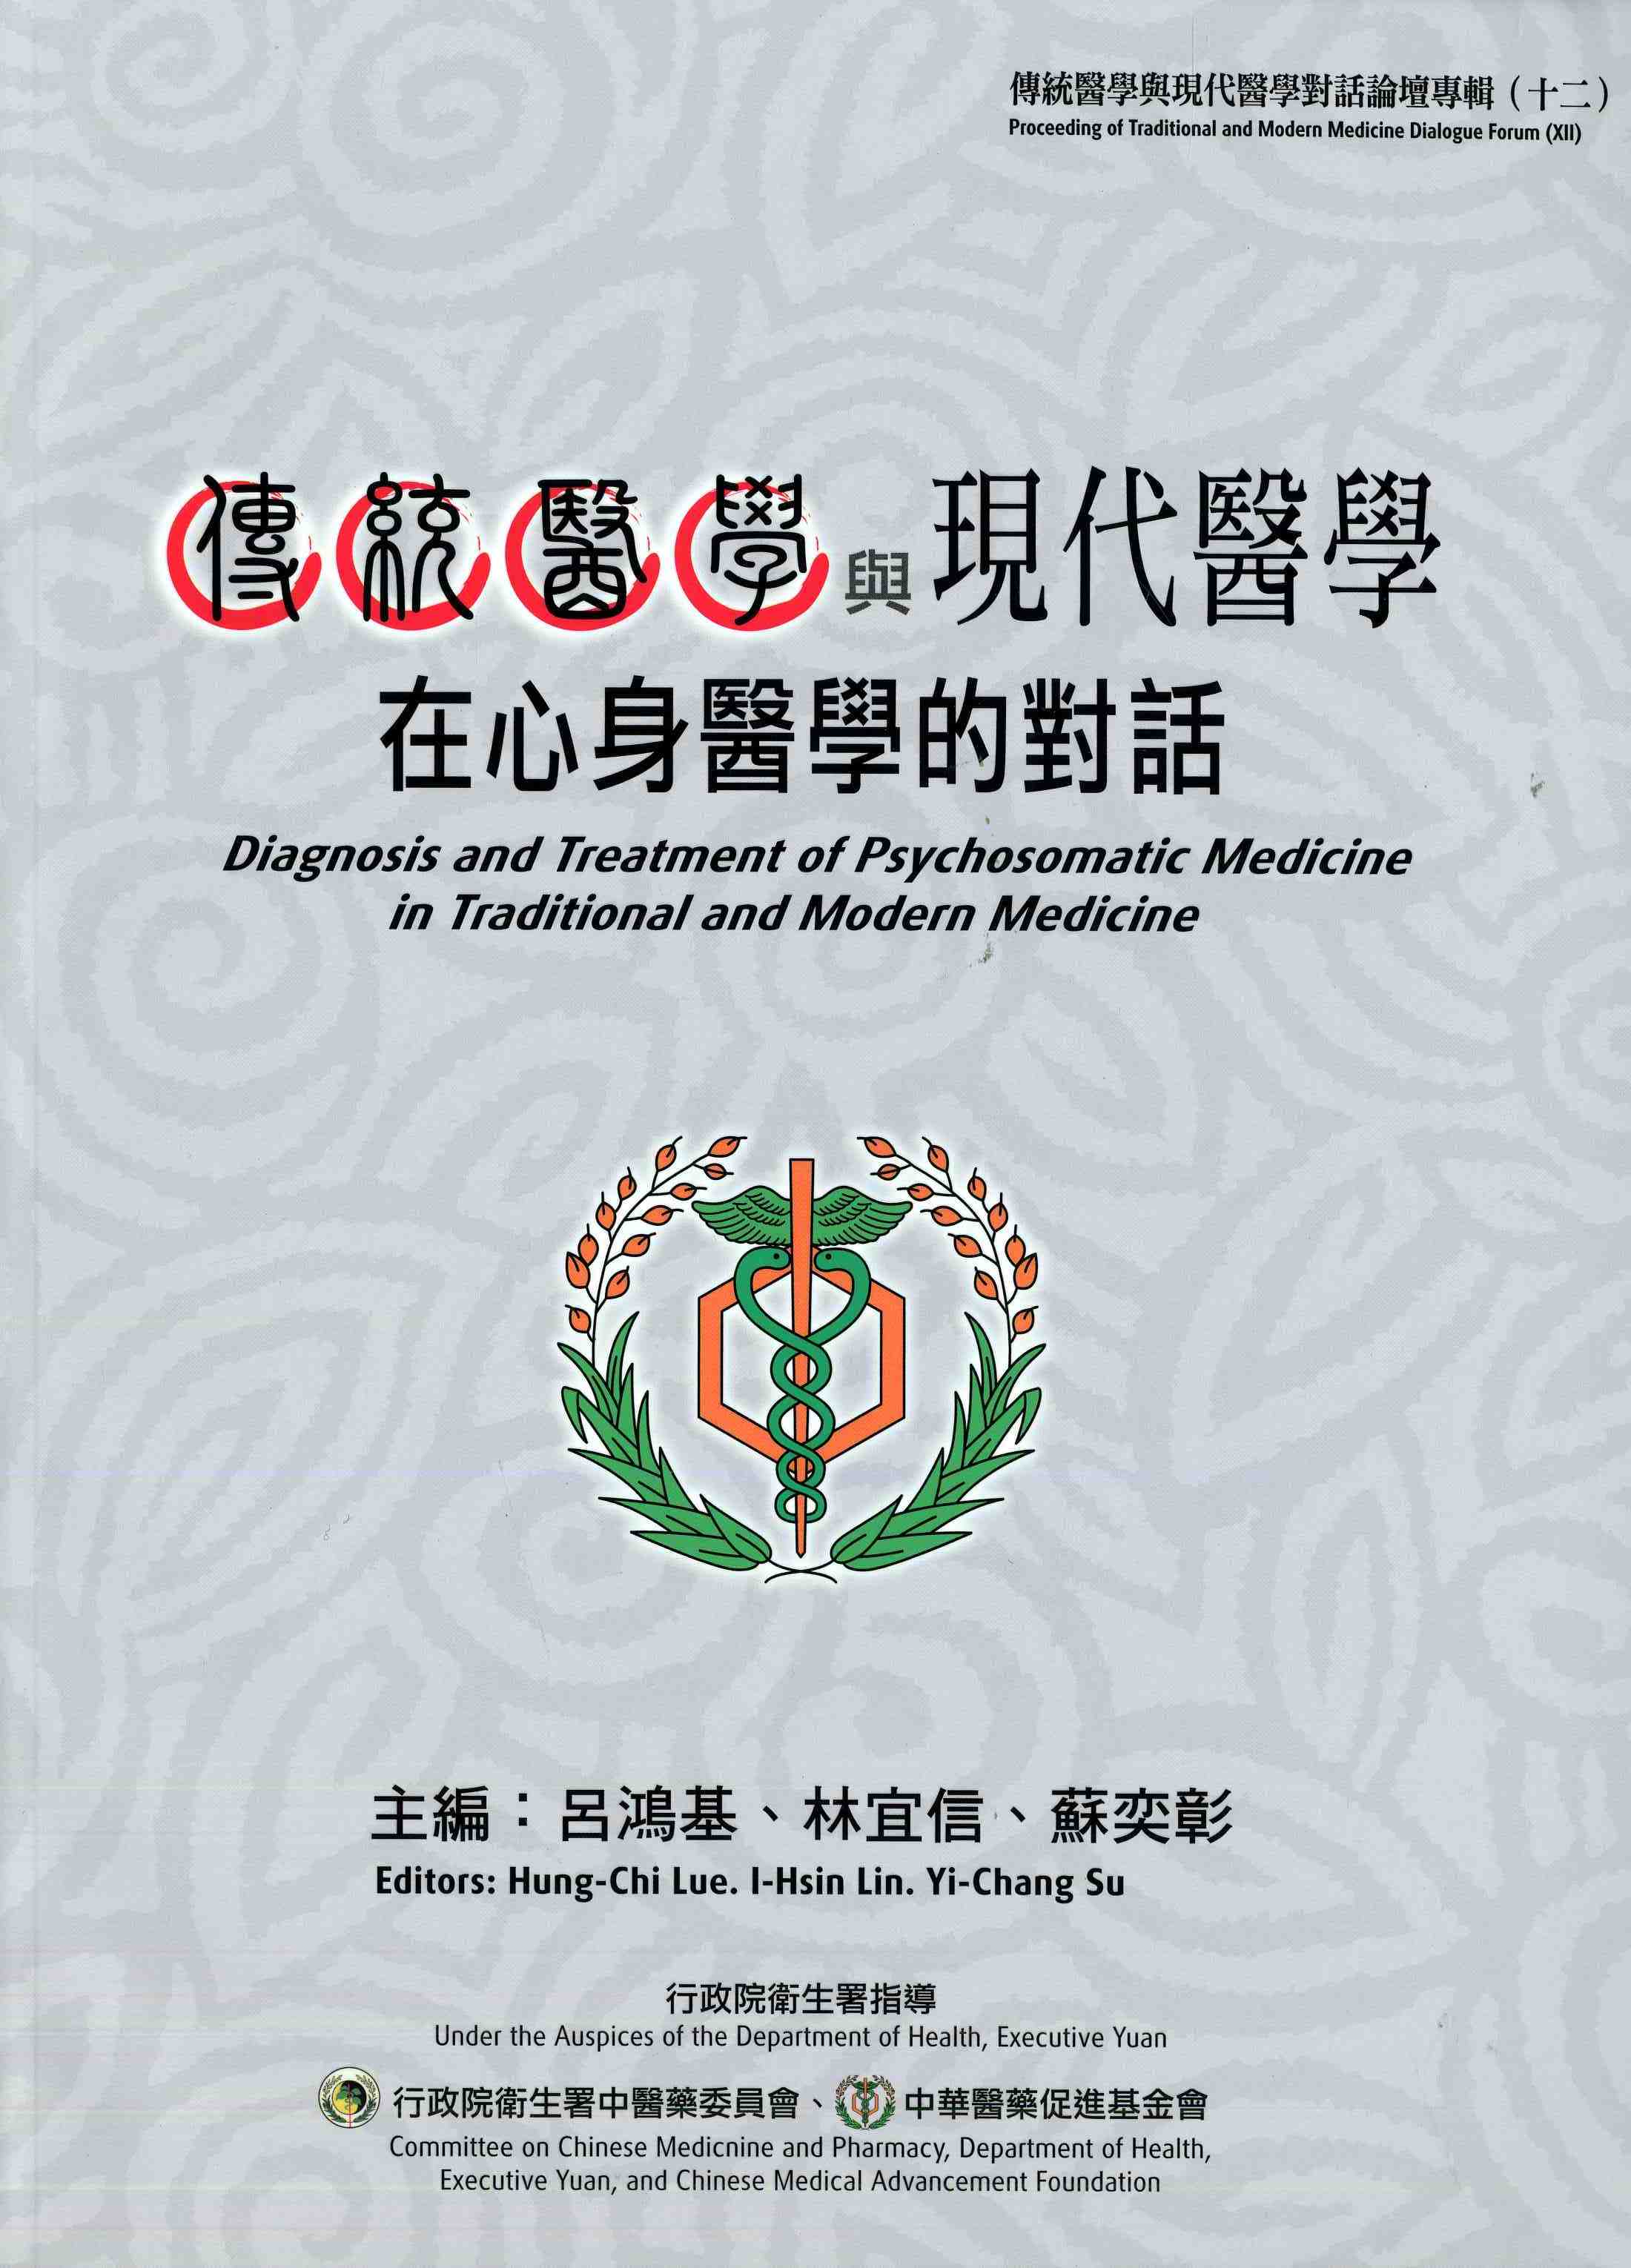 傳統醫學與現代醫學對話論壇專輯(十二)傳統醫學與現代醫學在心身醫學的對話